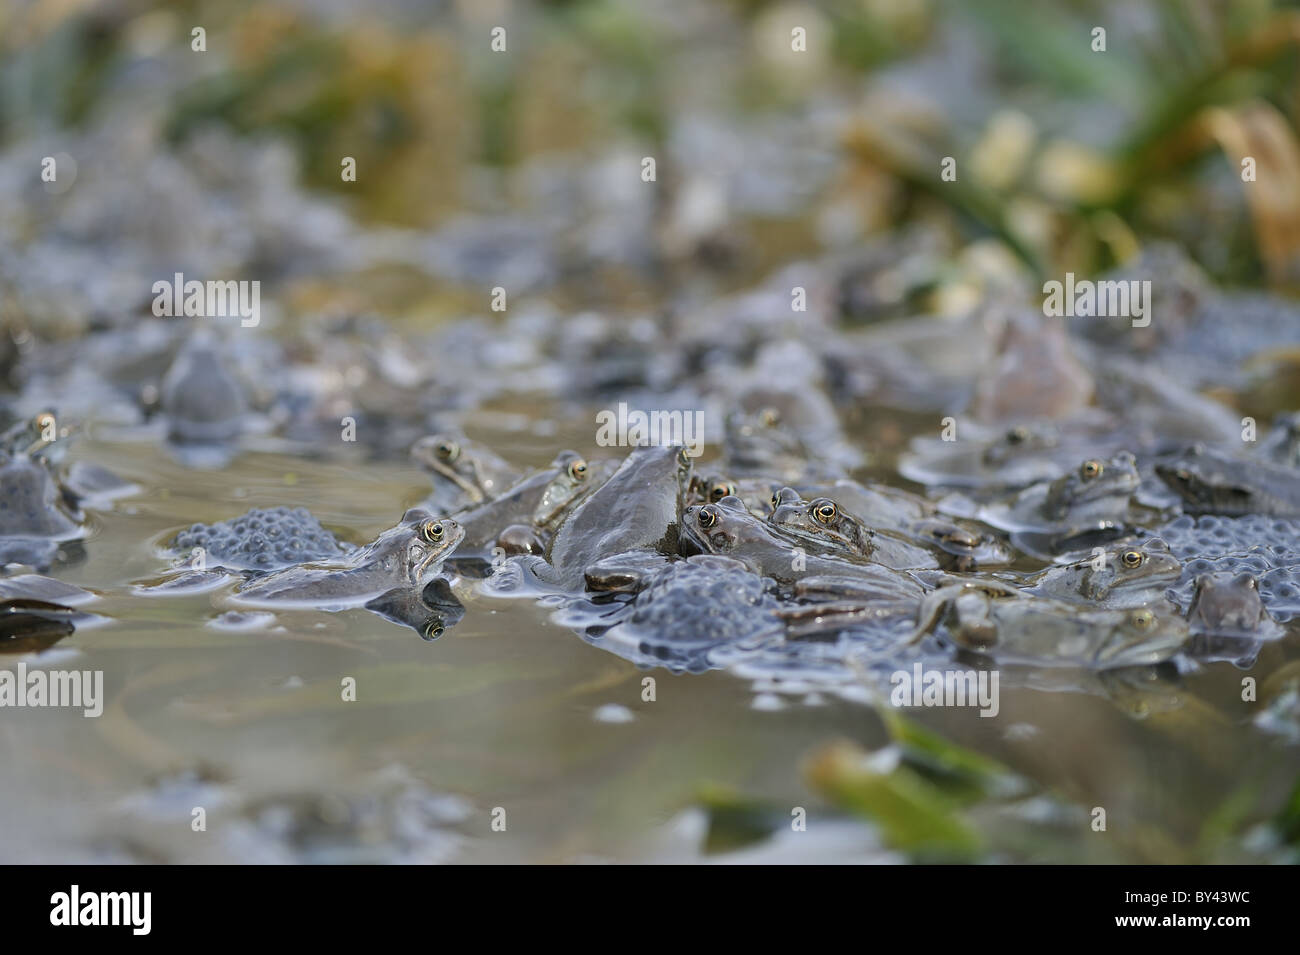 Rana comune (Rana temporaria) riunione in stagno per accoppiamento Foto Stock